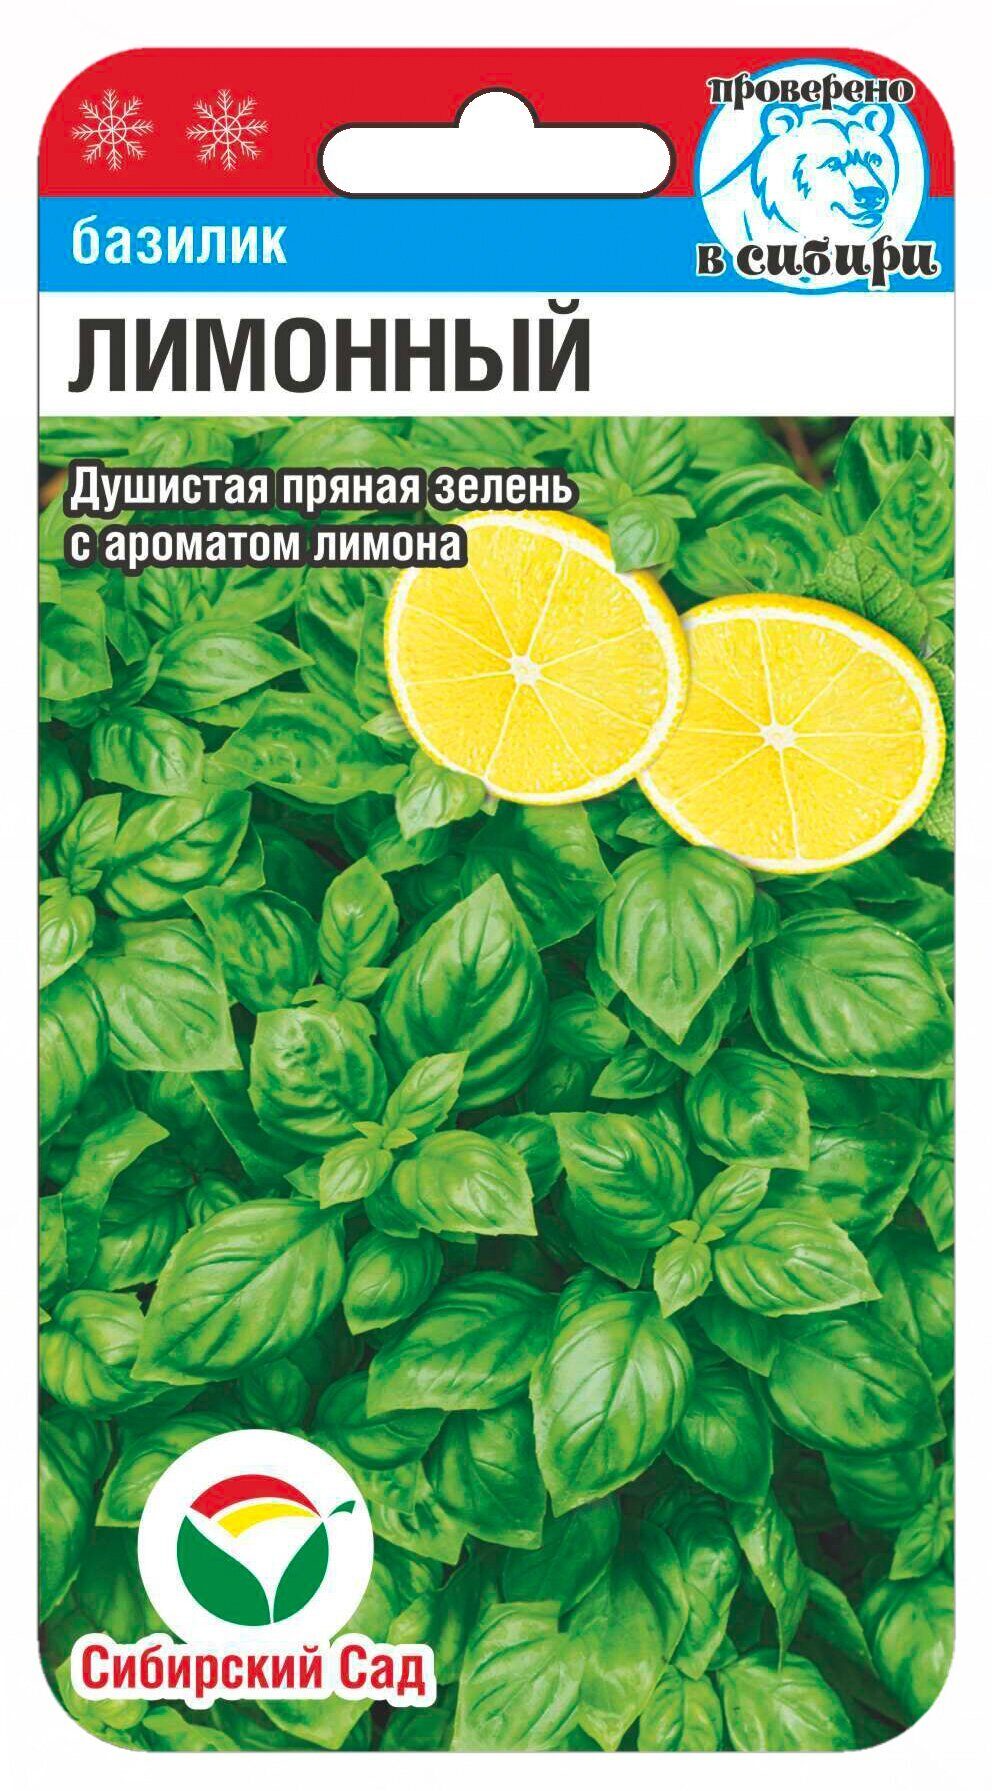 Базилик Лимонный 0,5 гр. купить оптом в Томске по цене 12,7 руб.